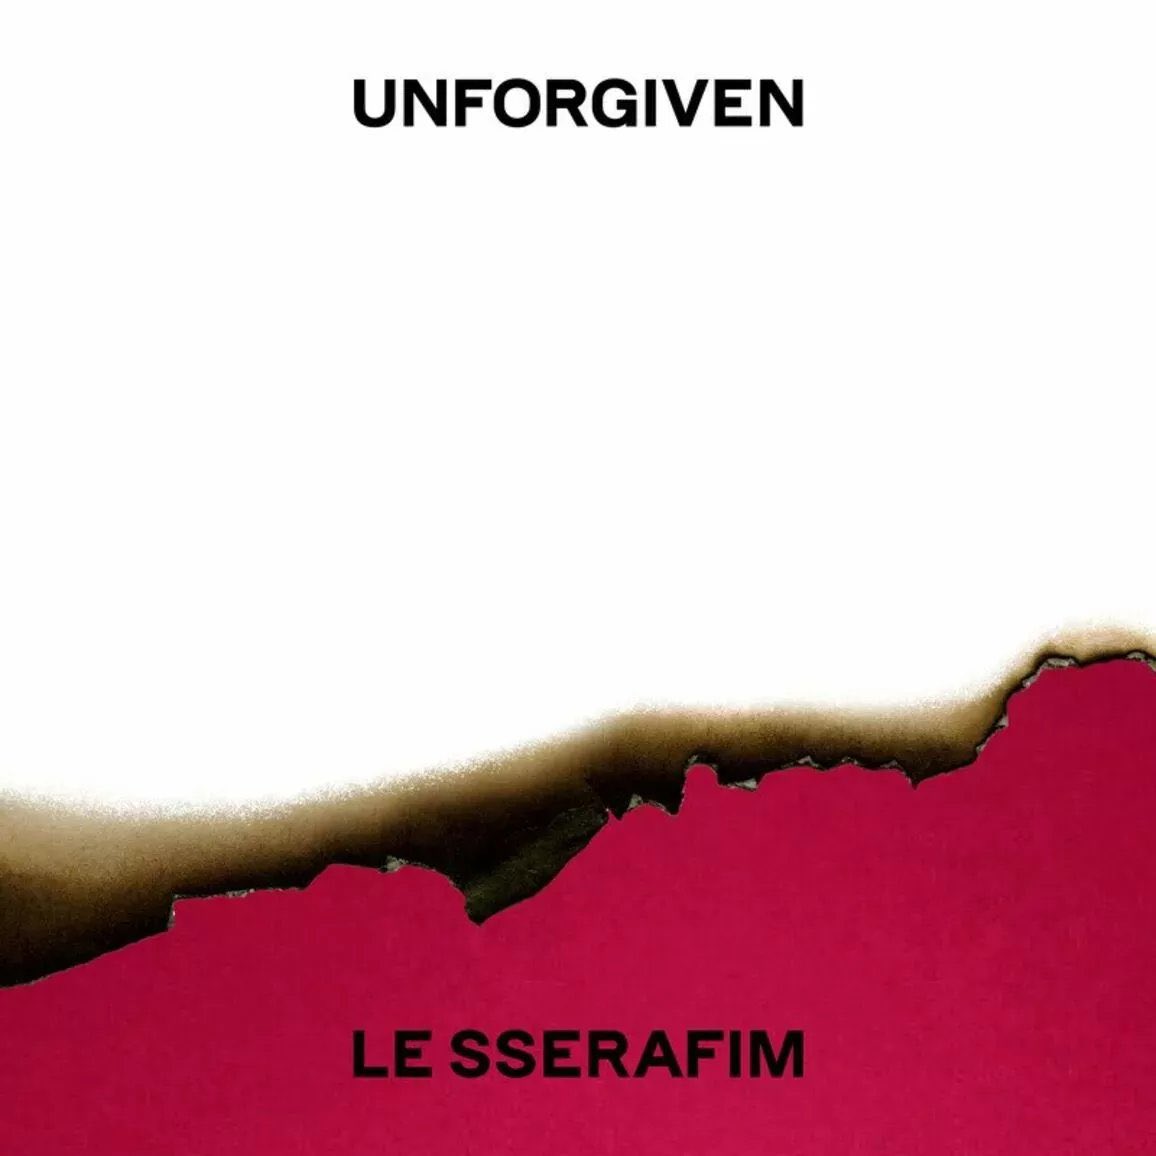 O álbum ‘Unforgiven’, do girl group de k-pop LE SSERAFIM, acaba de ultrapassar a marca de 1 bilhão de streams no Spotify e se torna o primeiro álbum de um grupo da quarta geração a atingir essa marca!